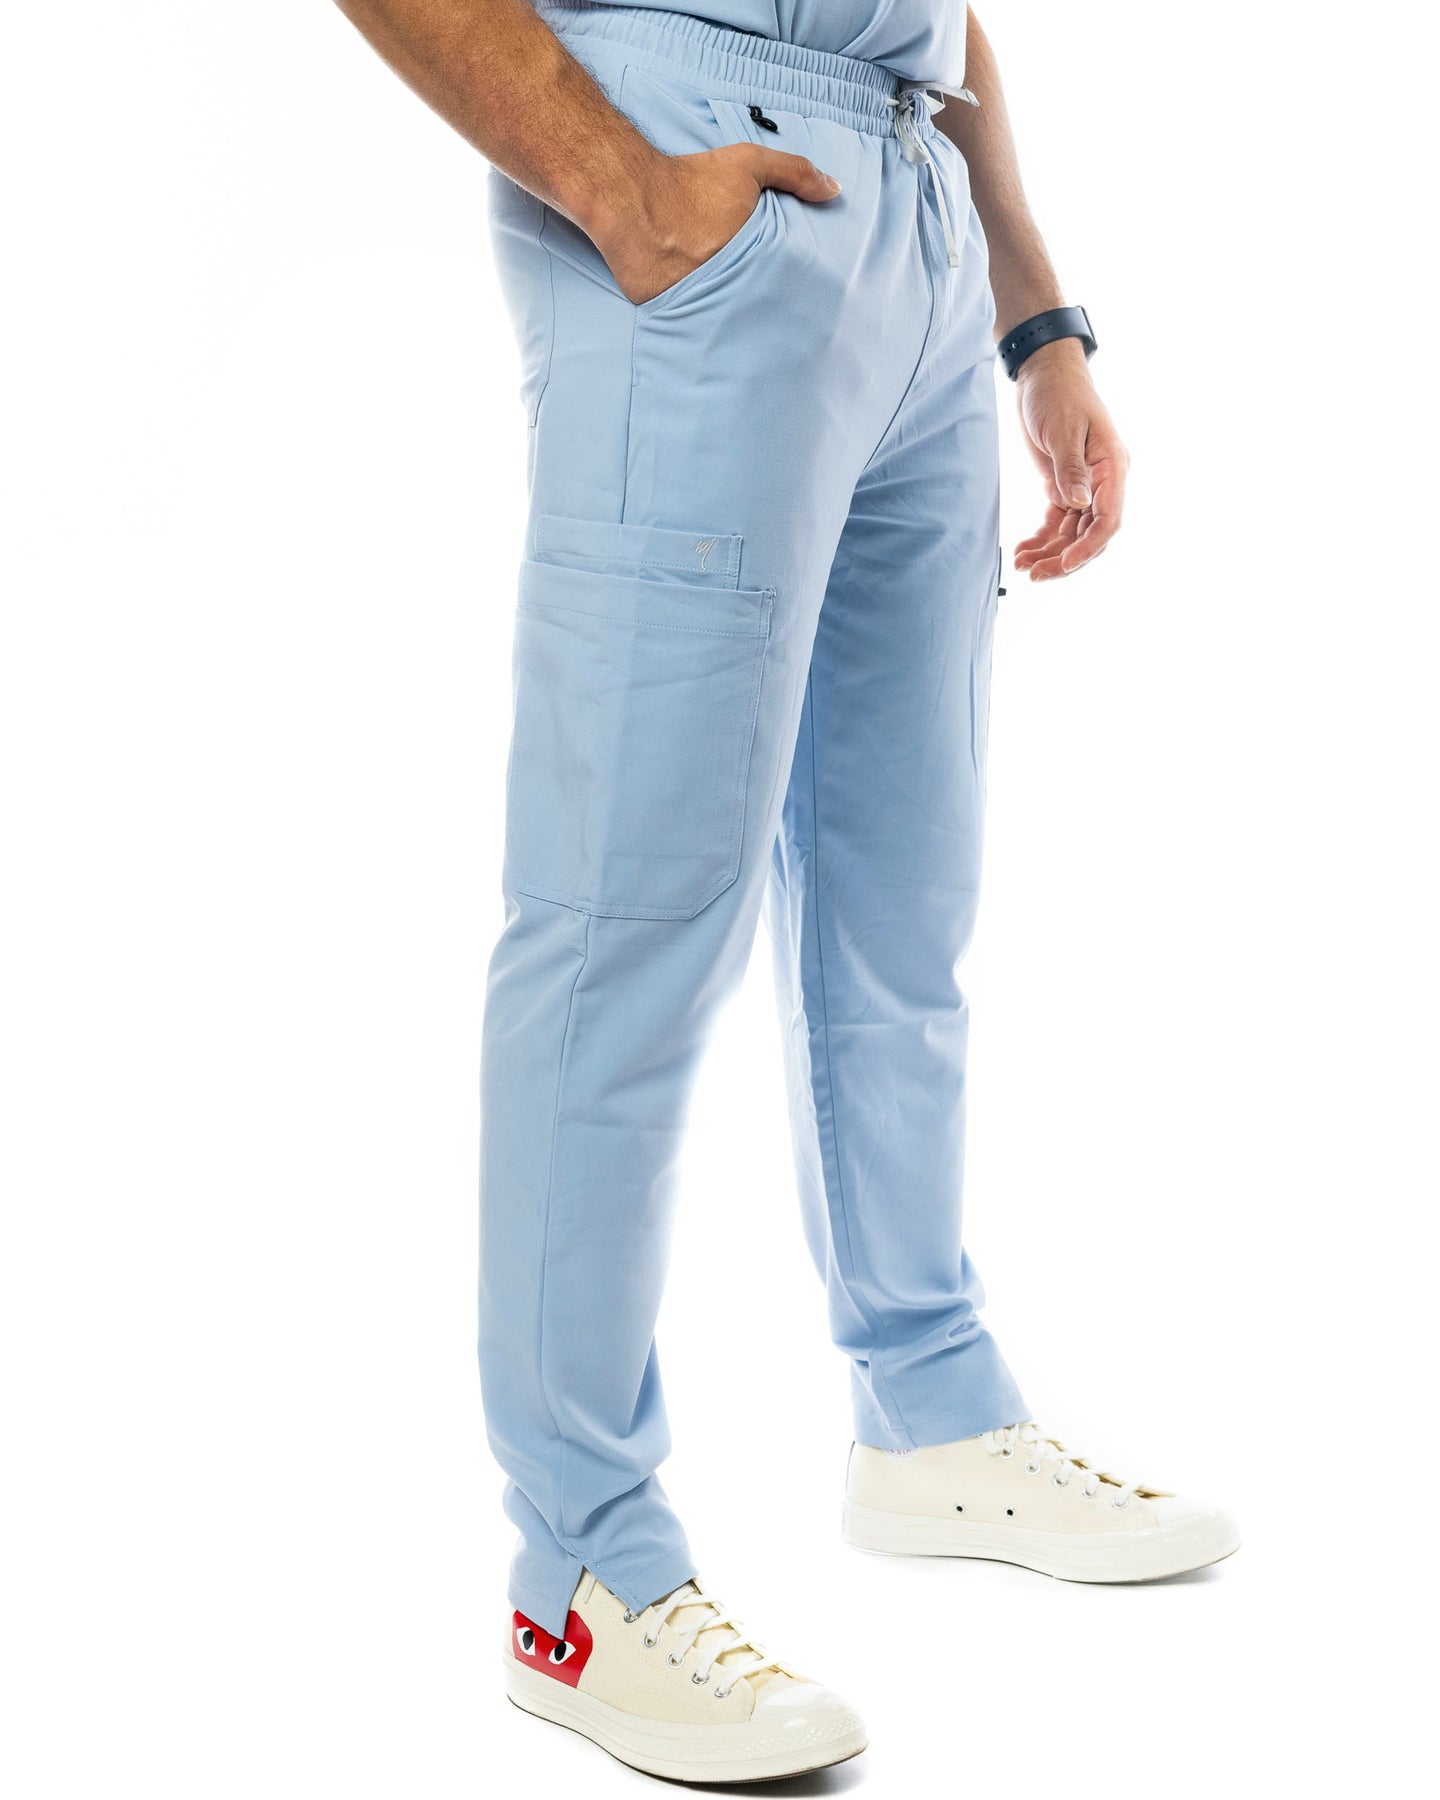 Amazon.com : Light Blue Golf Trousers - Mens 'Par 4' Cotton - 30